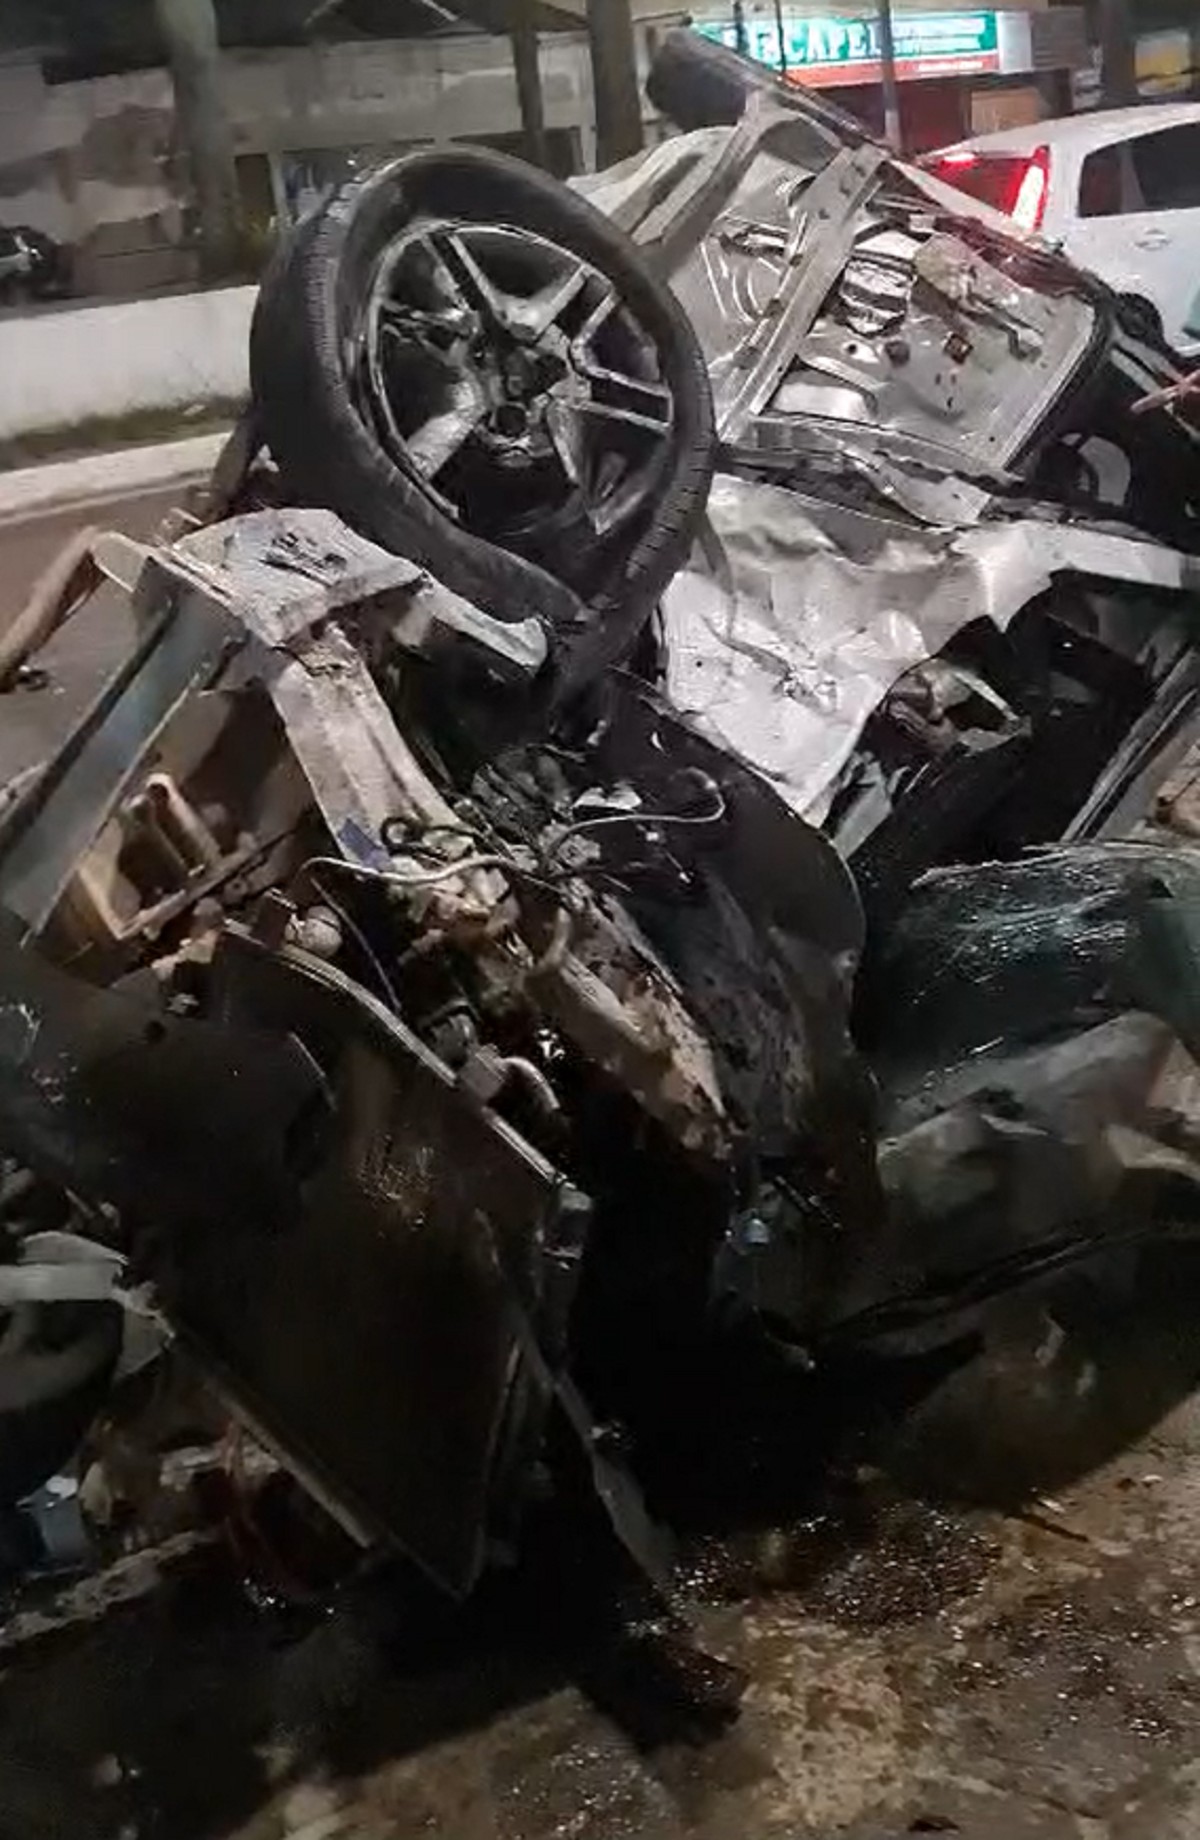 G1 - Óleo na RJ-106 causa acidente na cidade de Maricá, RJ - notícias em  Serra, Lagos e Norte do RJ